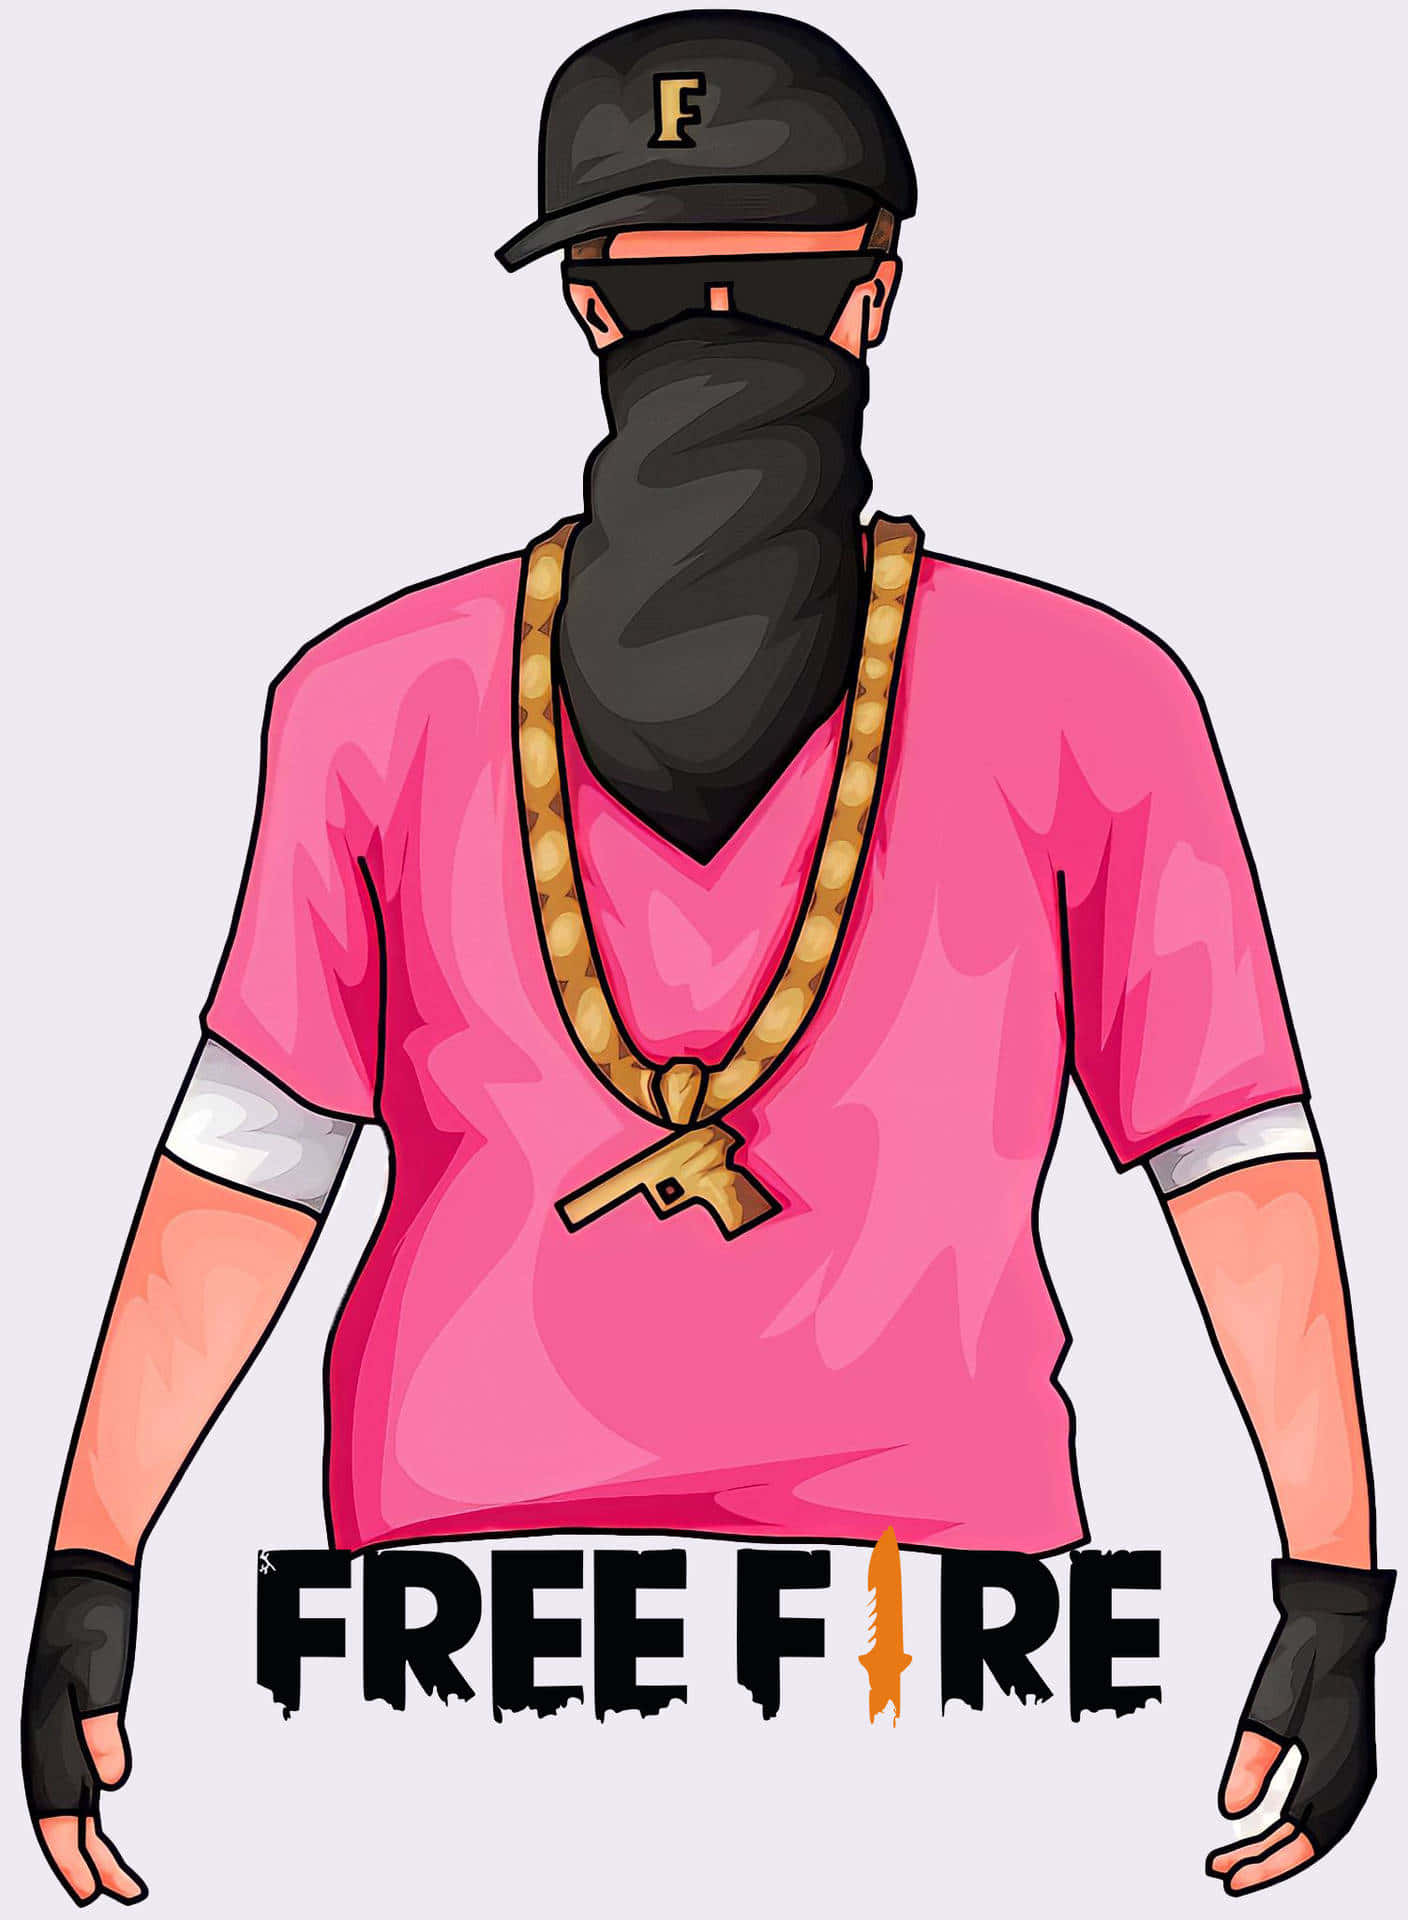 Free Hip Hop Free Fire Wallpaper Downloads, [100+] Hip Hop Free Fire  Wallpapers for FREE 